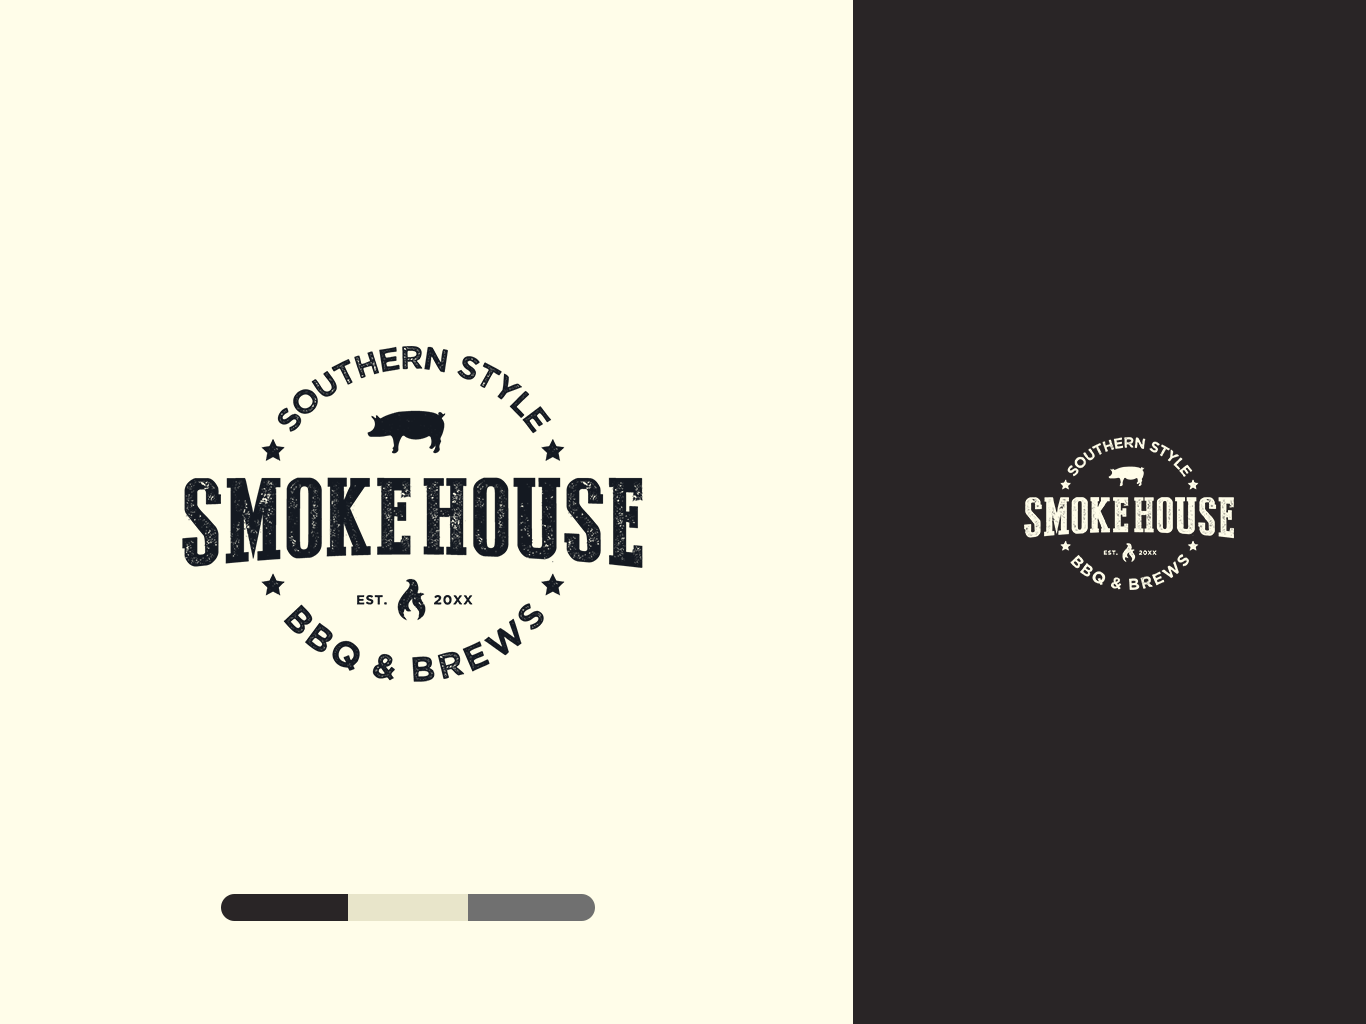 Smokehouse Logo - Smokehouse Logo ID Concept by Matt Nemetz on Dribbble